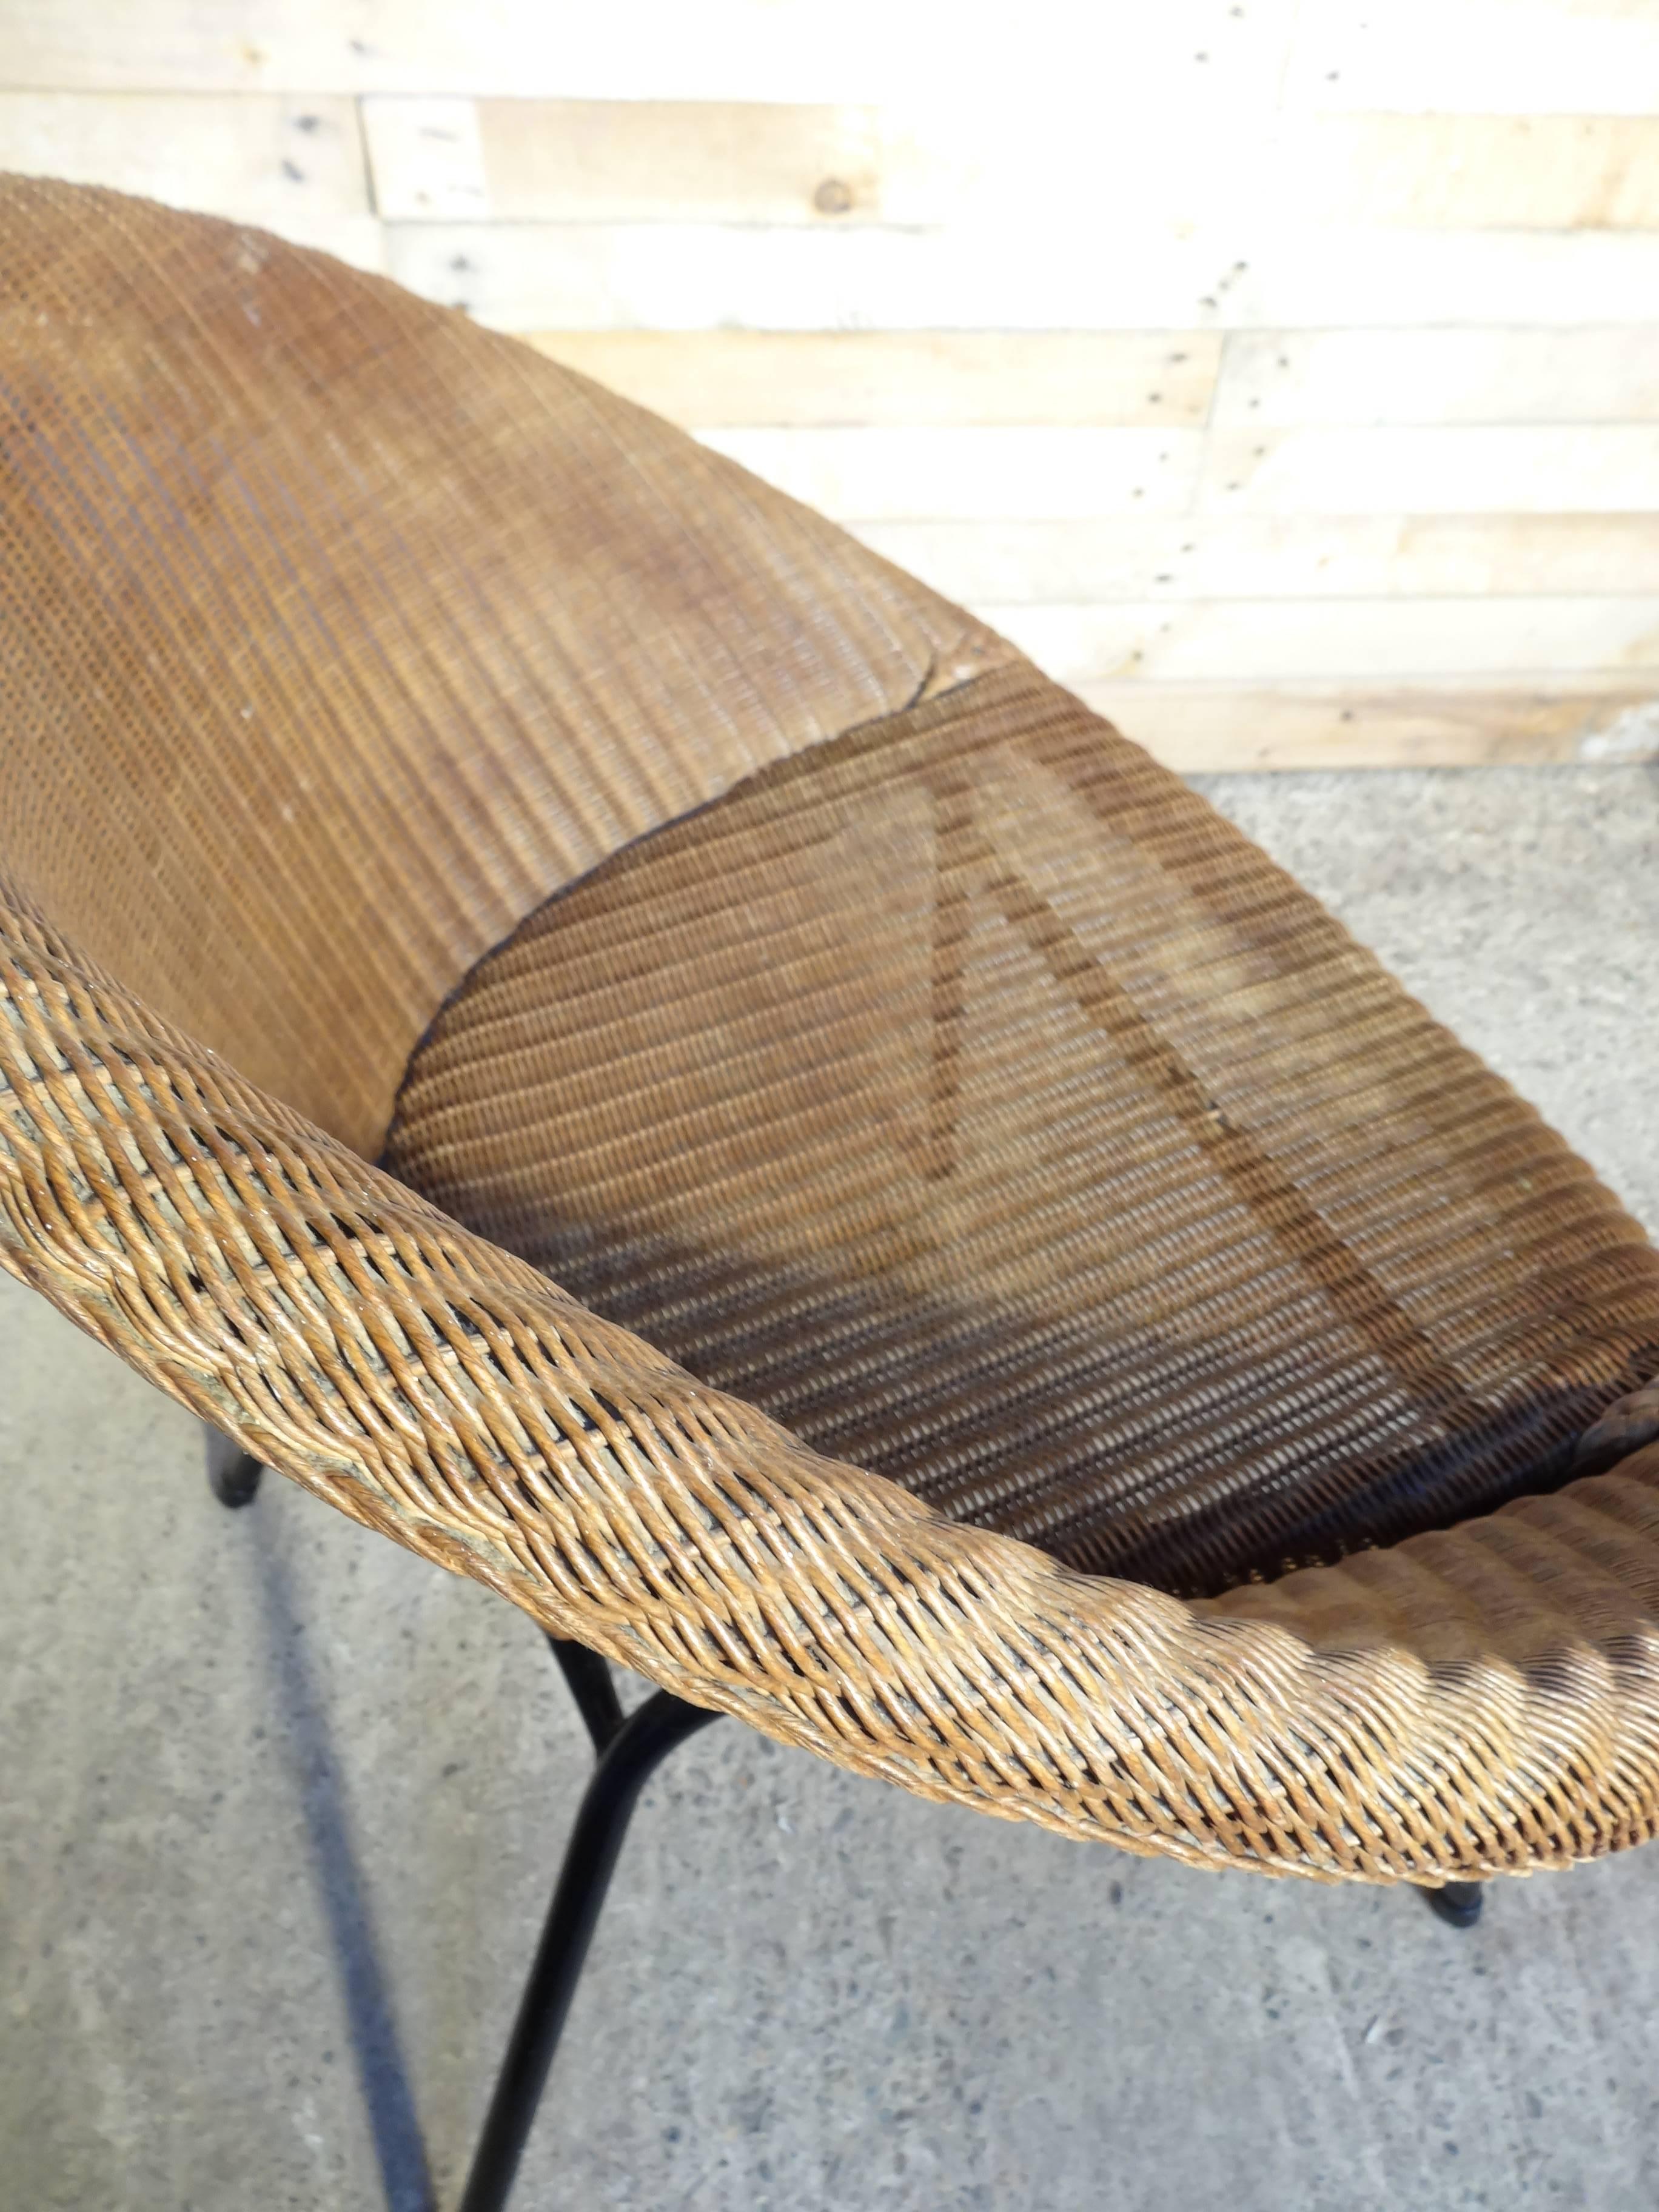 ensemble de chaises en rotin LLoyds Loom Metal Wicker des années 1960, extrêmement recherché, dans un état très vintage. Les deux chaises sont étiquetées.
Mesures :
Hauteur du siège : 39 cm, hauteur : 73 cm, profondeur : 60 cm, largeur : 70